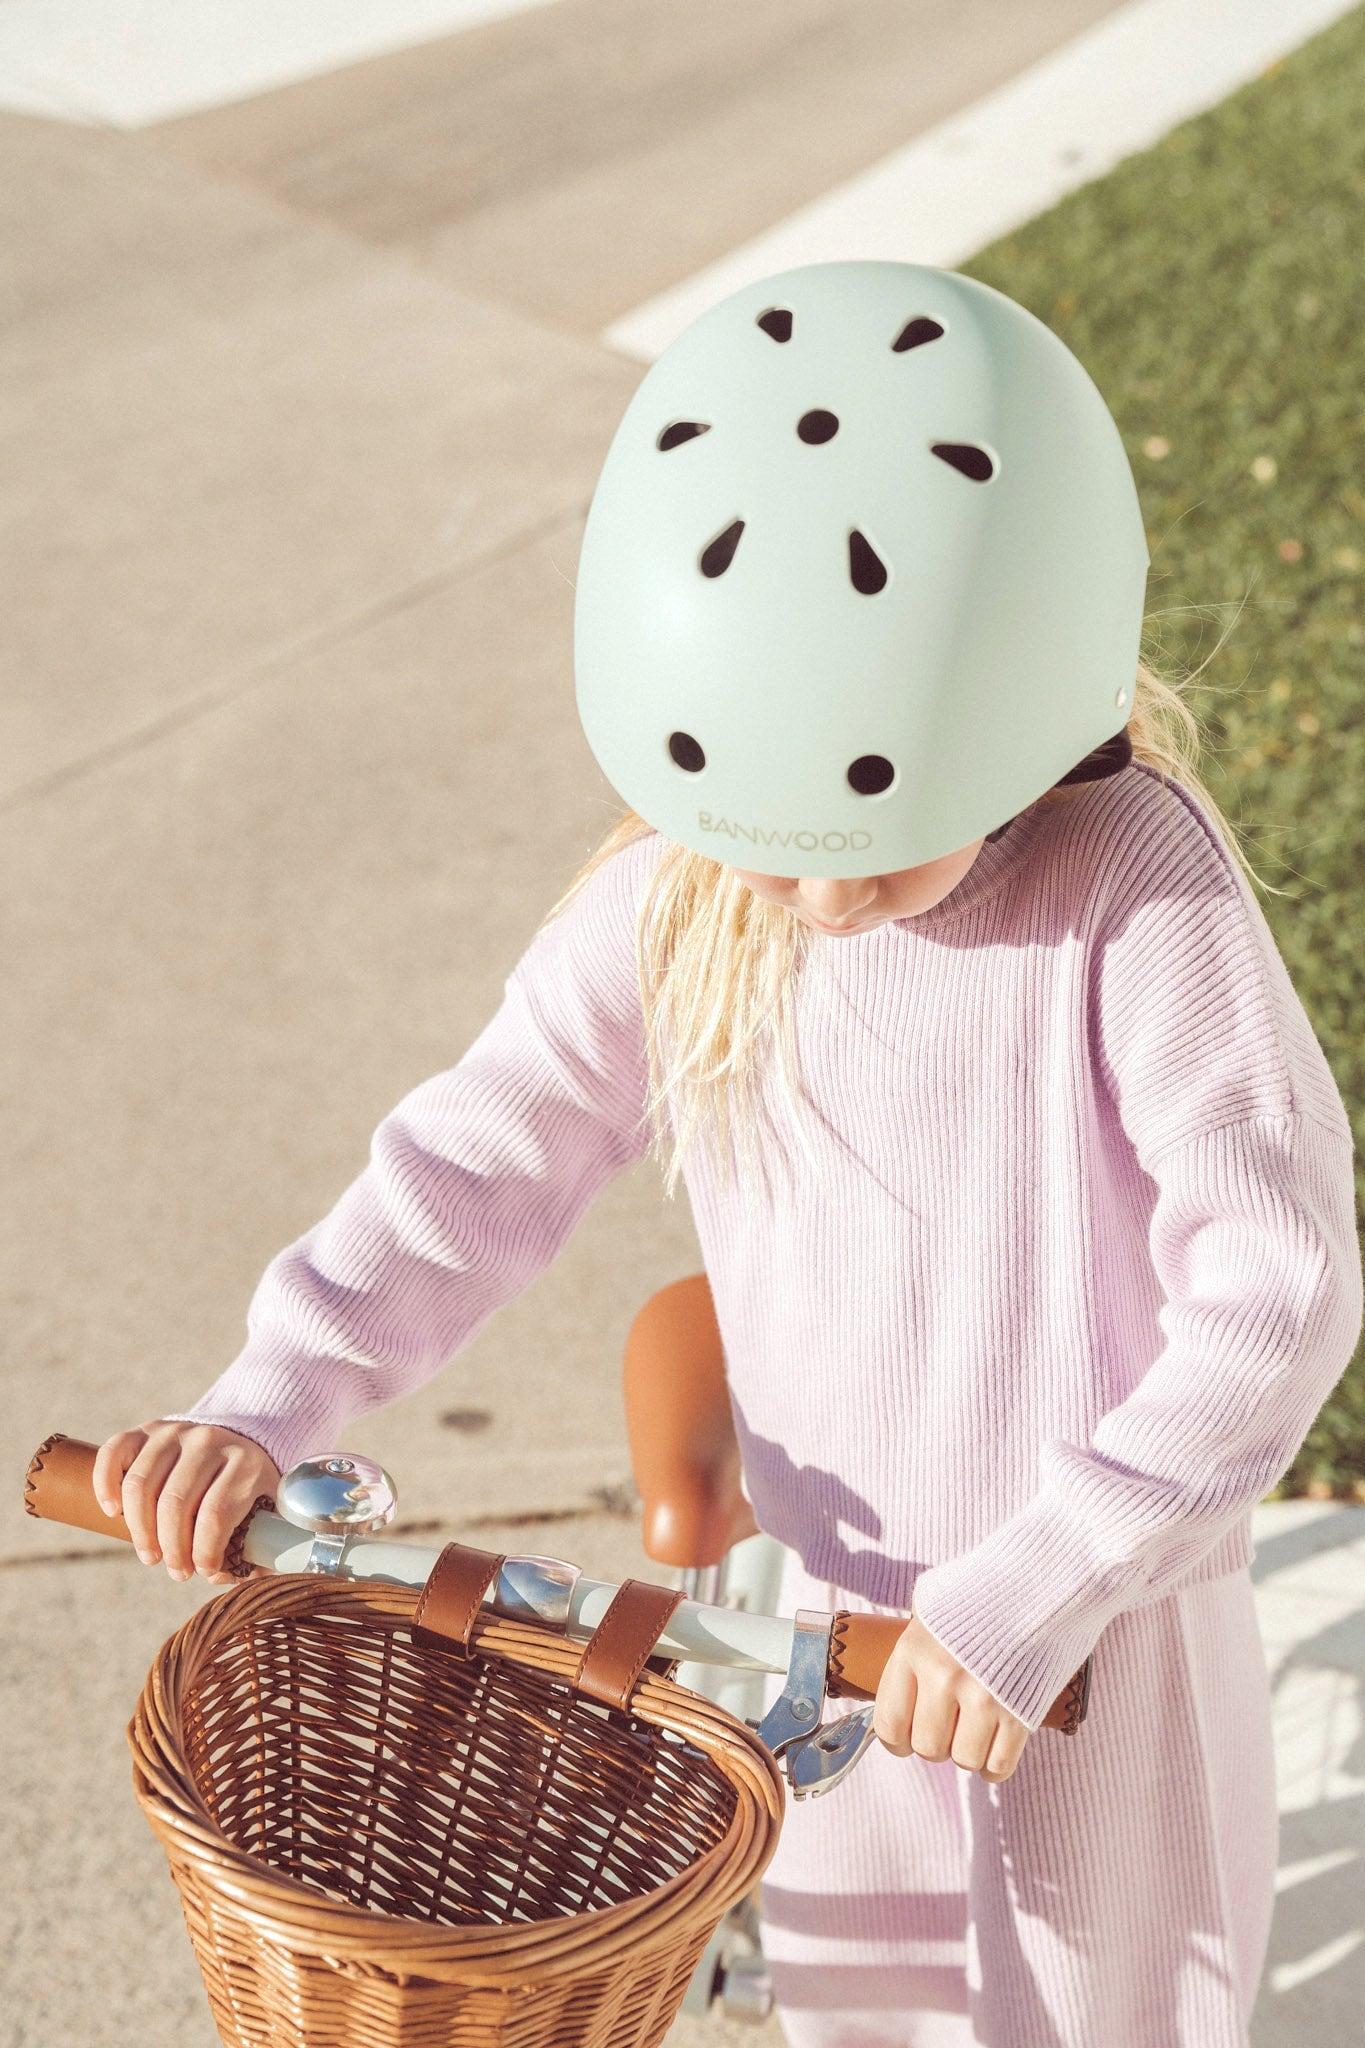 Banwood Classic Bike Helmet for Children Bike Helmet - Alder & Alouette